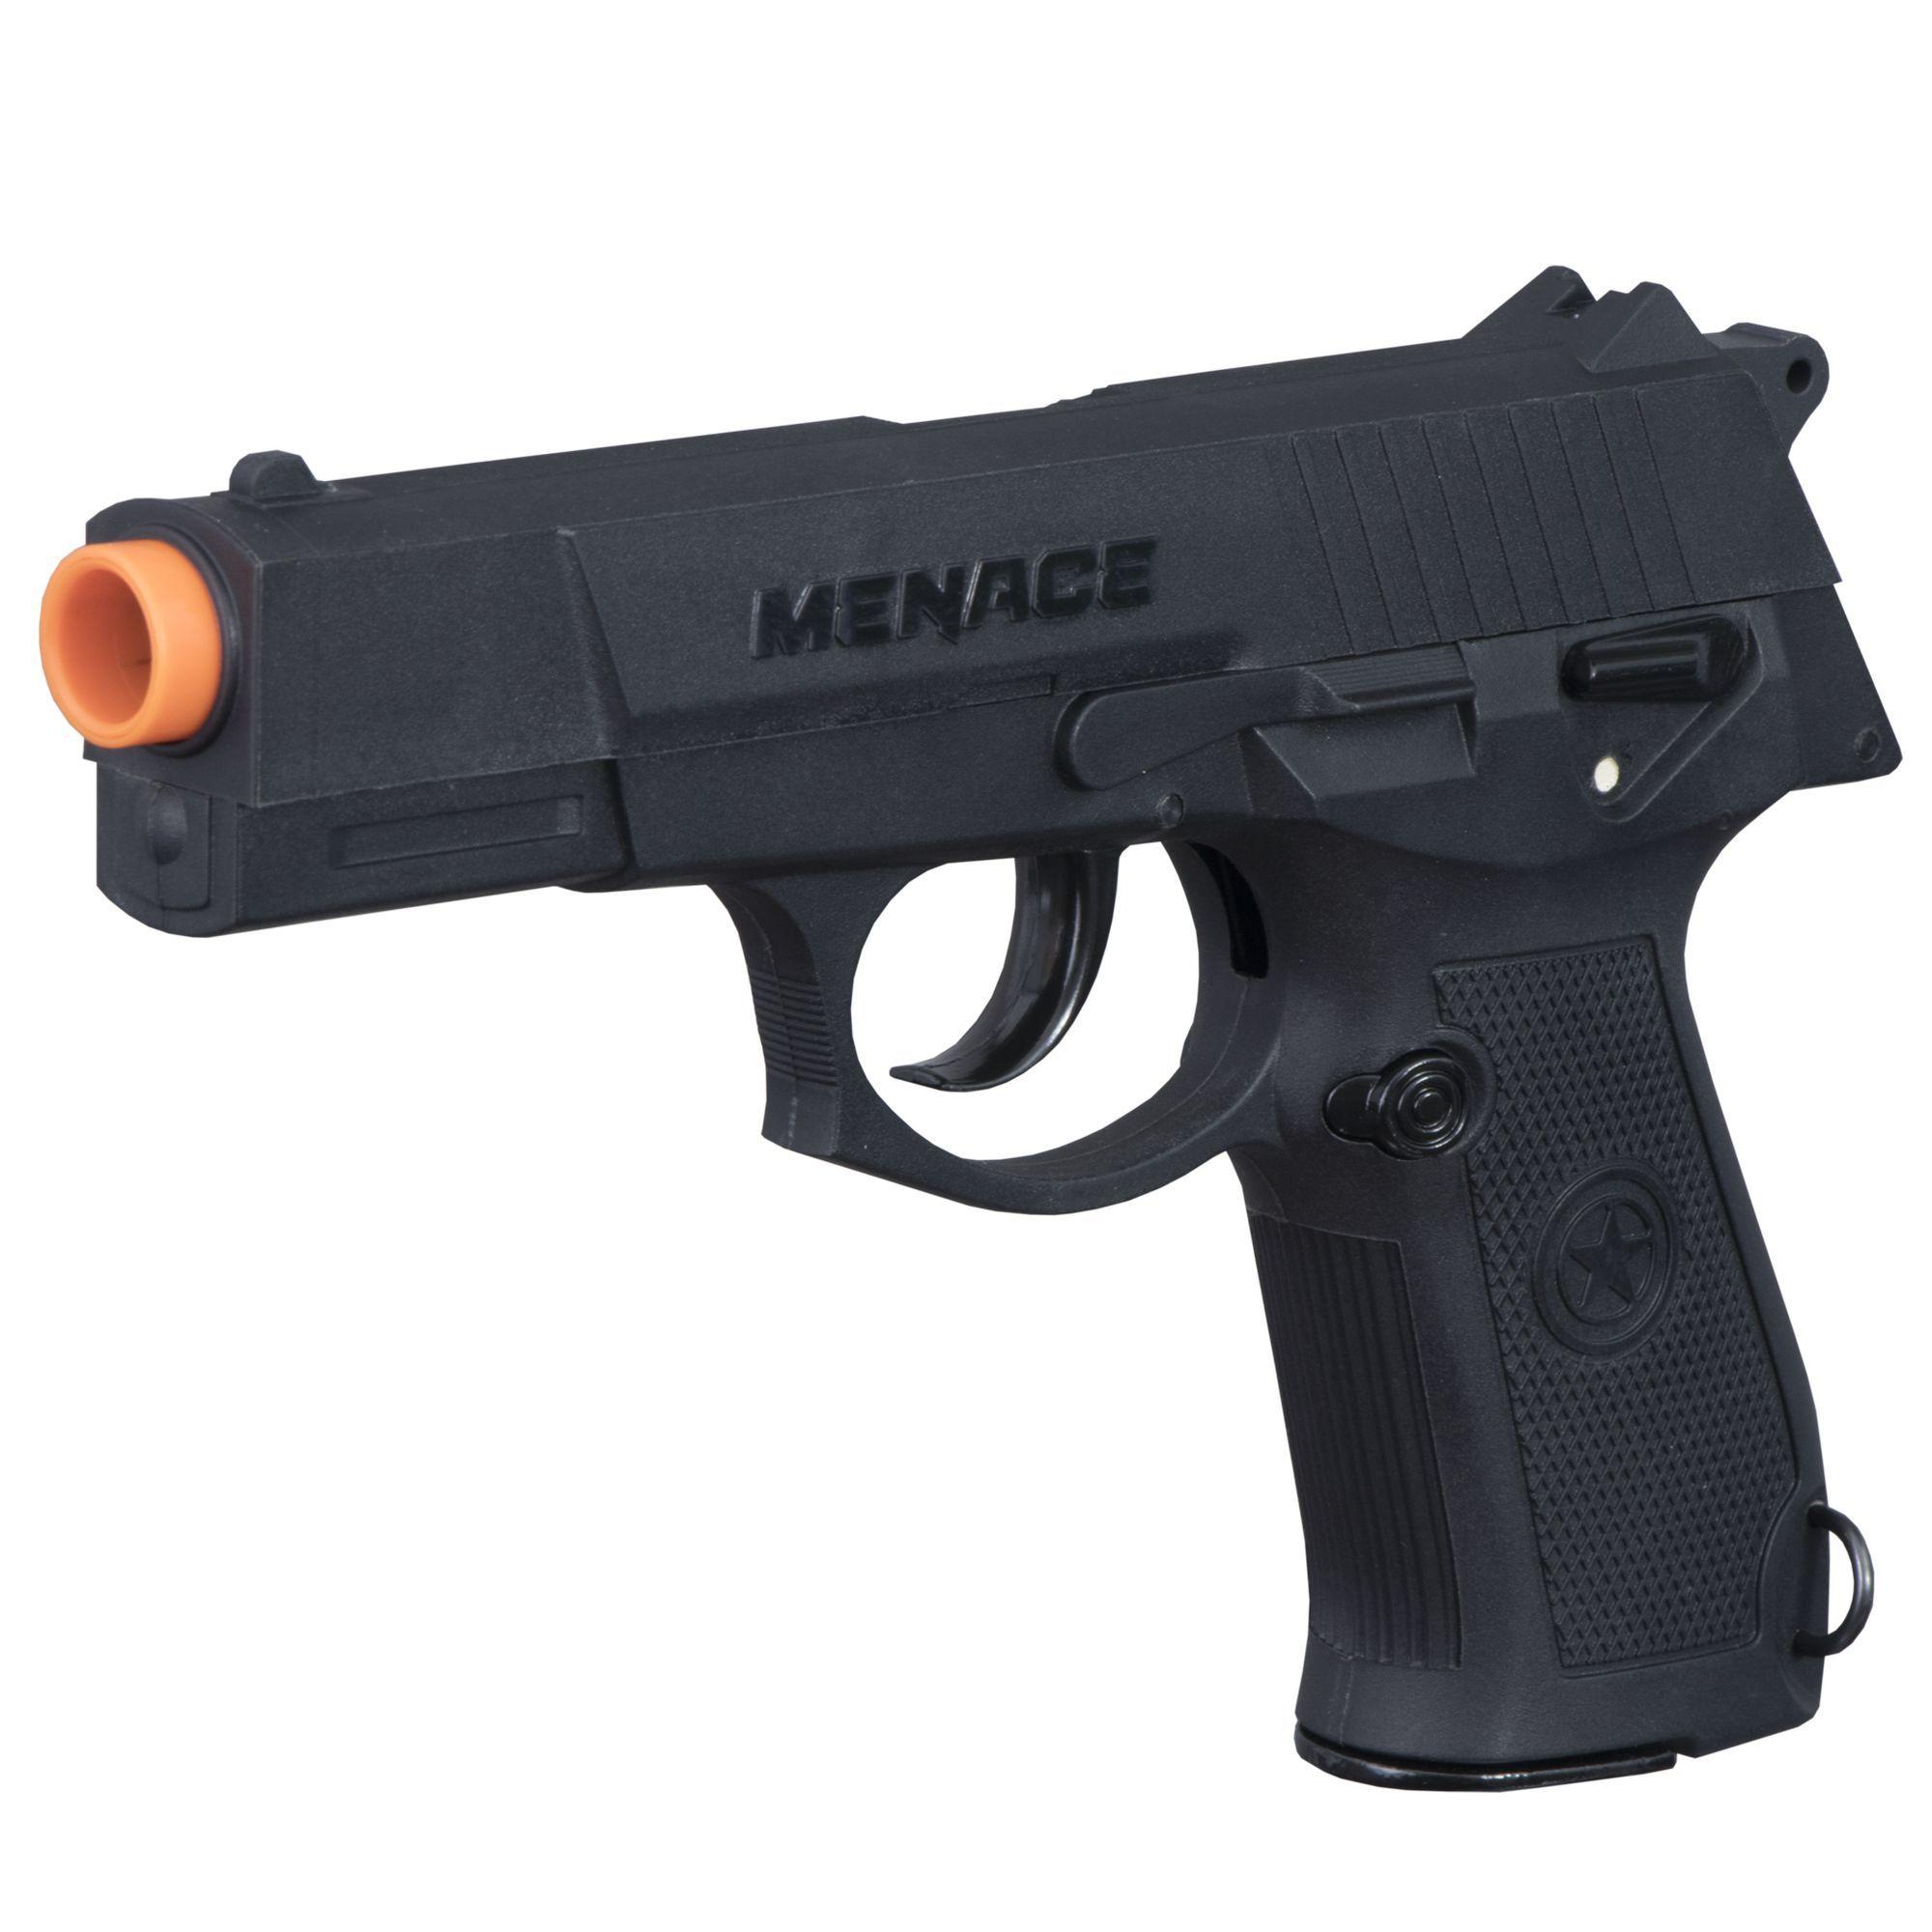 Tippmann Menace 50cal Semi-Auto Paintball Pistol